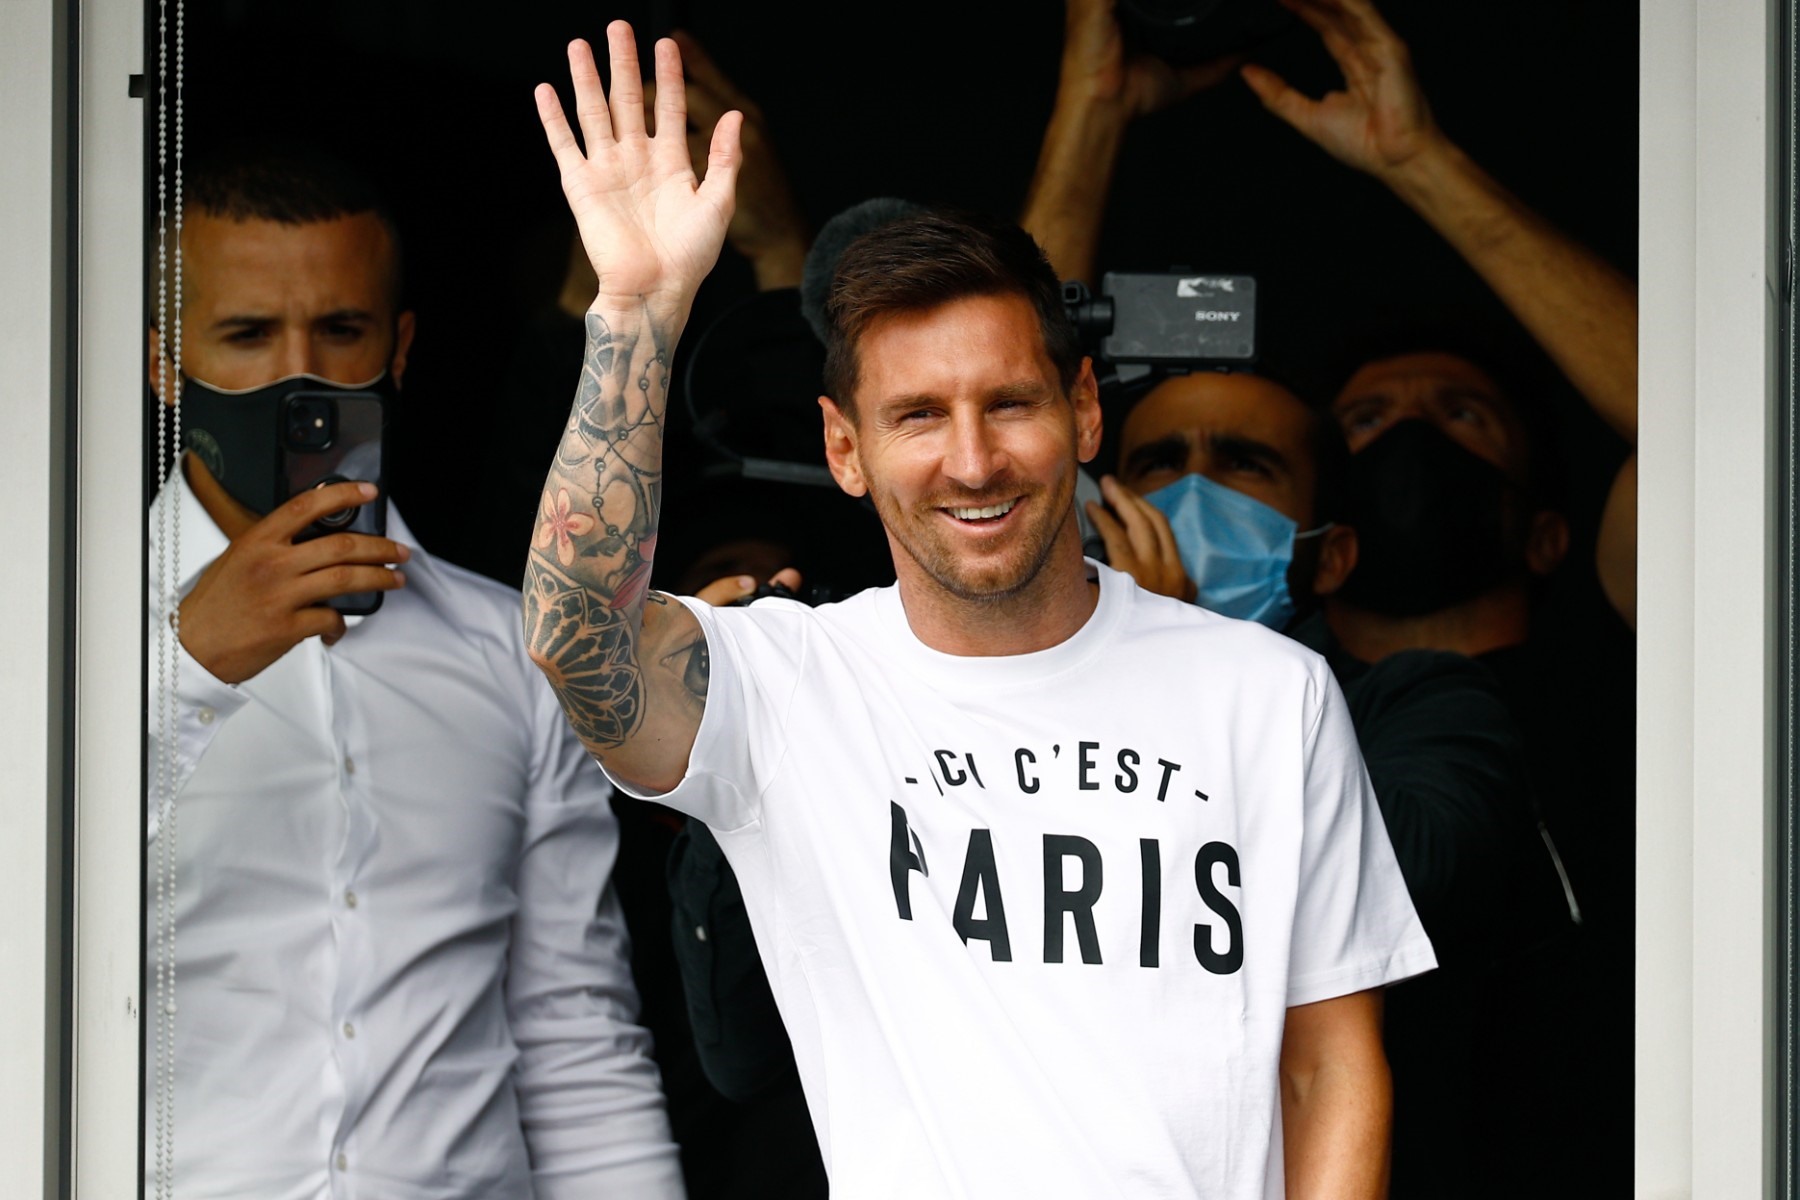 Cầu thủ bóng đá người Argentina Lionel Messi vẫy tay chào người hâm mộ tại sân bay Le Bourget, phía bắc Paris ngày 10.8 khi đến ký hợp đồng gia nhập câu lạc bộ Paris Saint-Germain. Cầu thủ 34 tuổi đã rời Barcelona, câu lạc bộ gắn bó trong suốt sự nghiệp thi đấu chuyên nghiệp kéo dài 17 năm qua. Ảnh: AFP